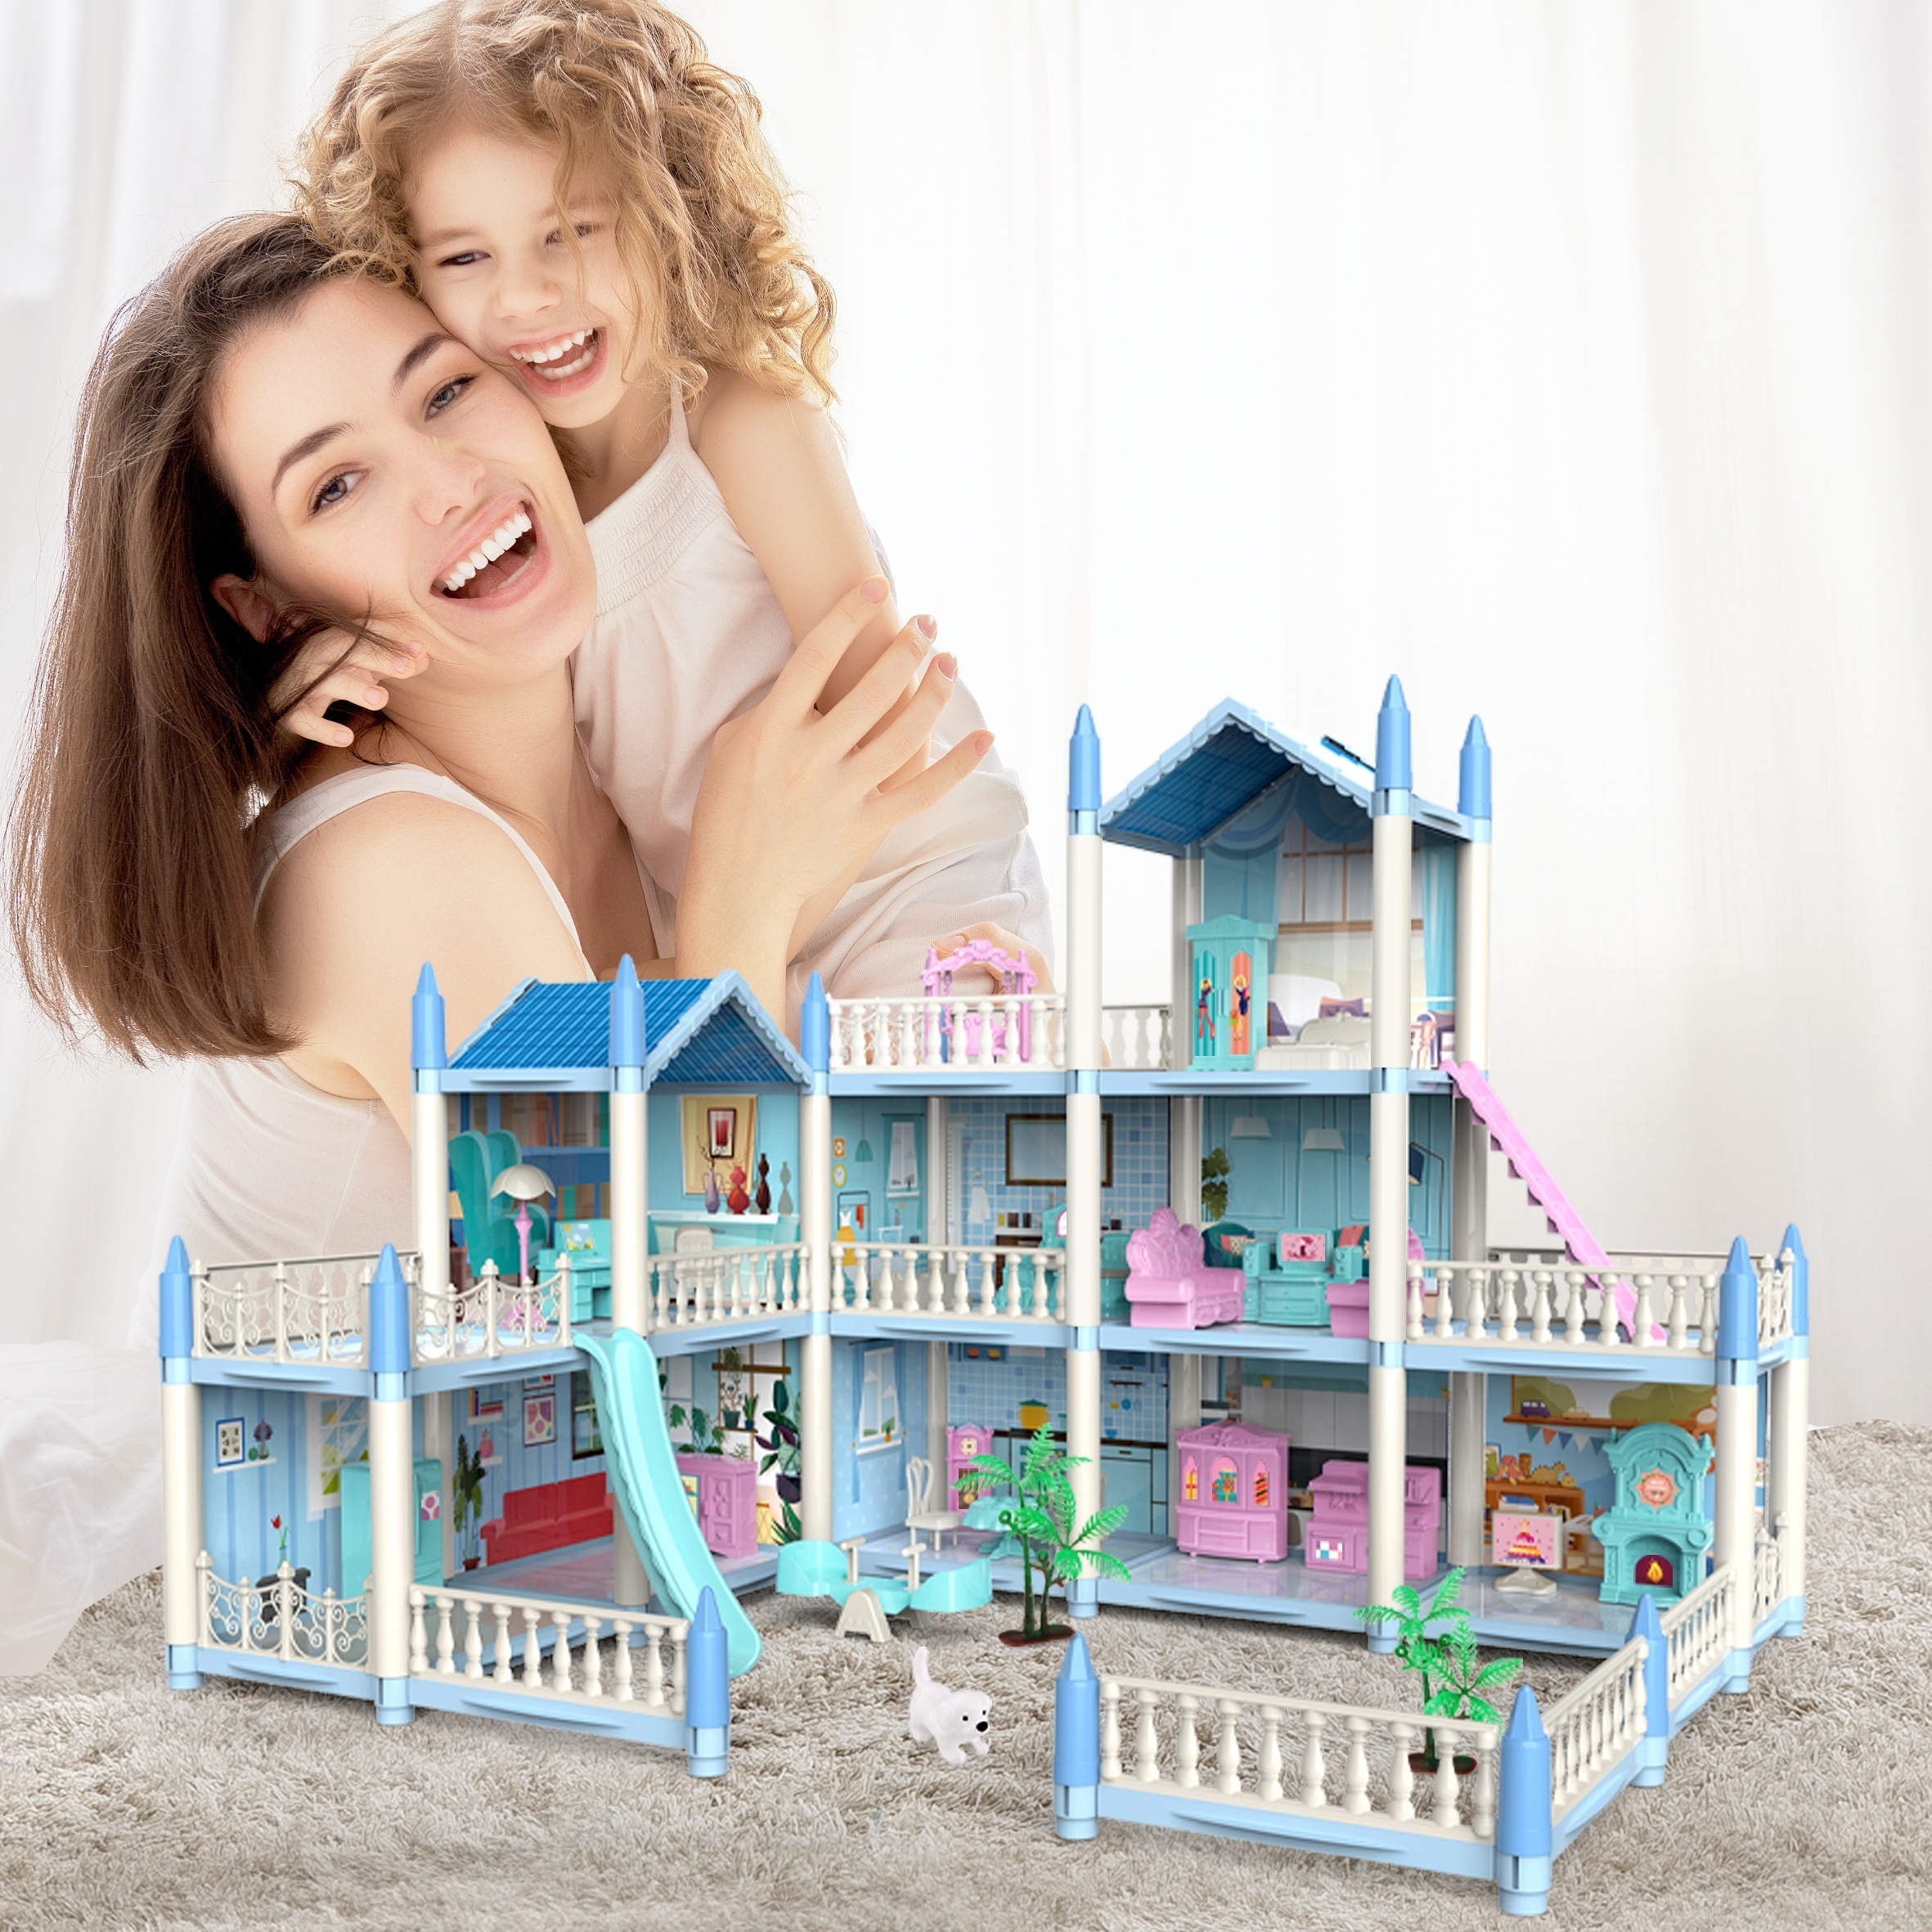 Puzzle 3D Maison De Poupee - Dreamy Doll House